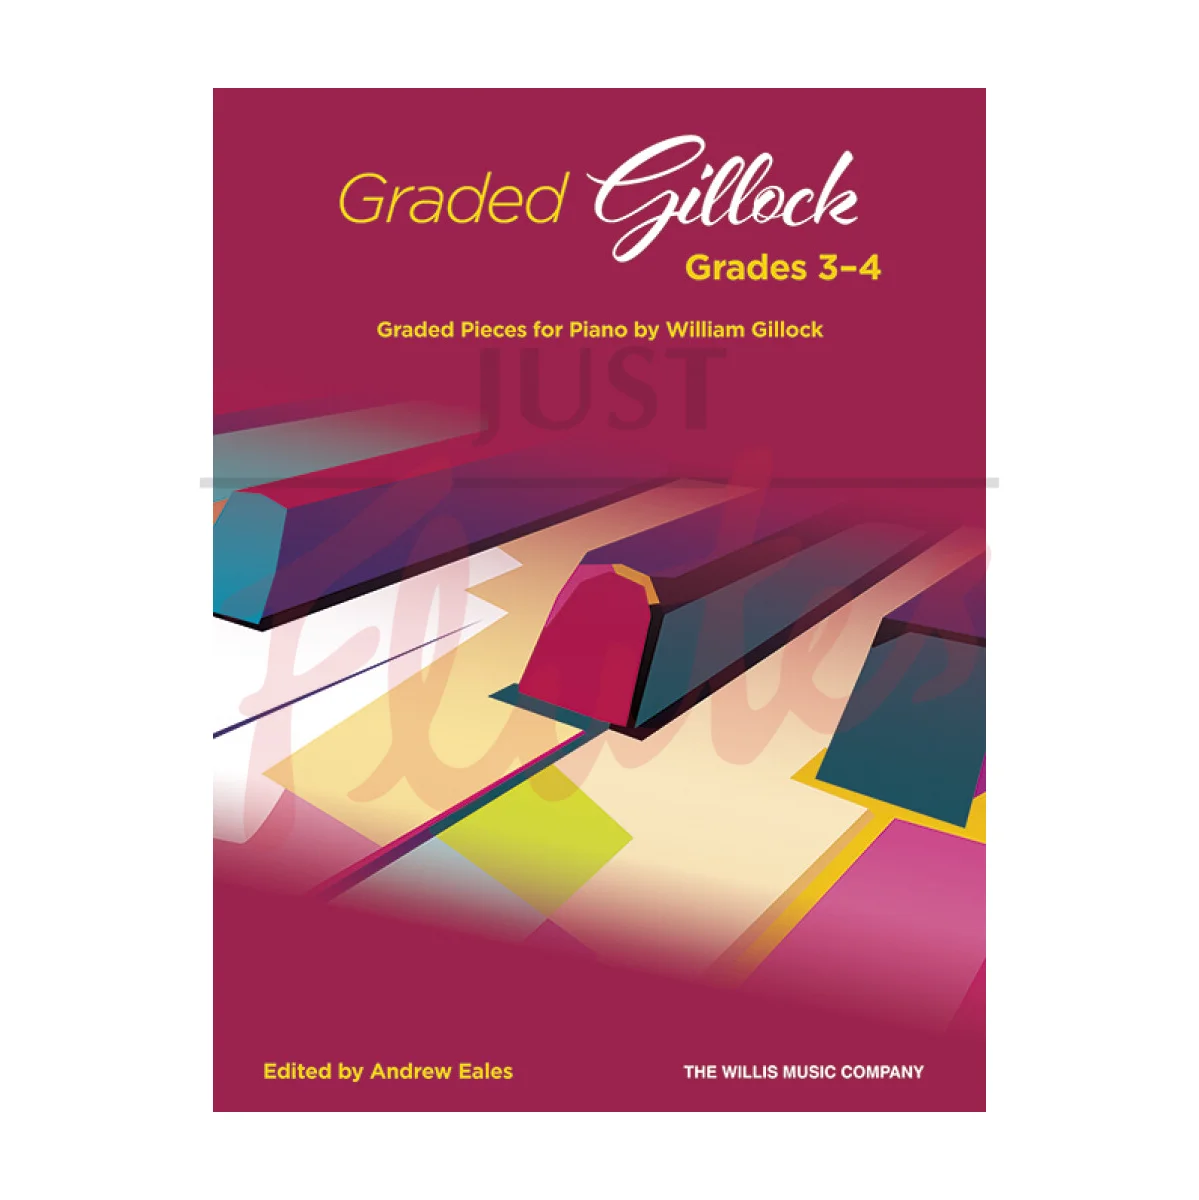 Graded Gillock, Grades 3-4 for Piano